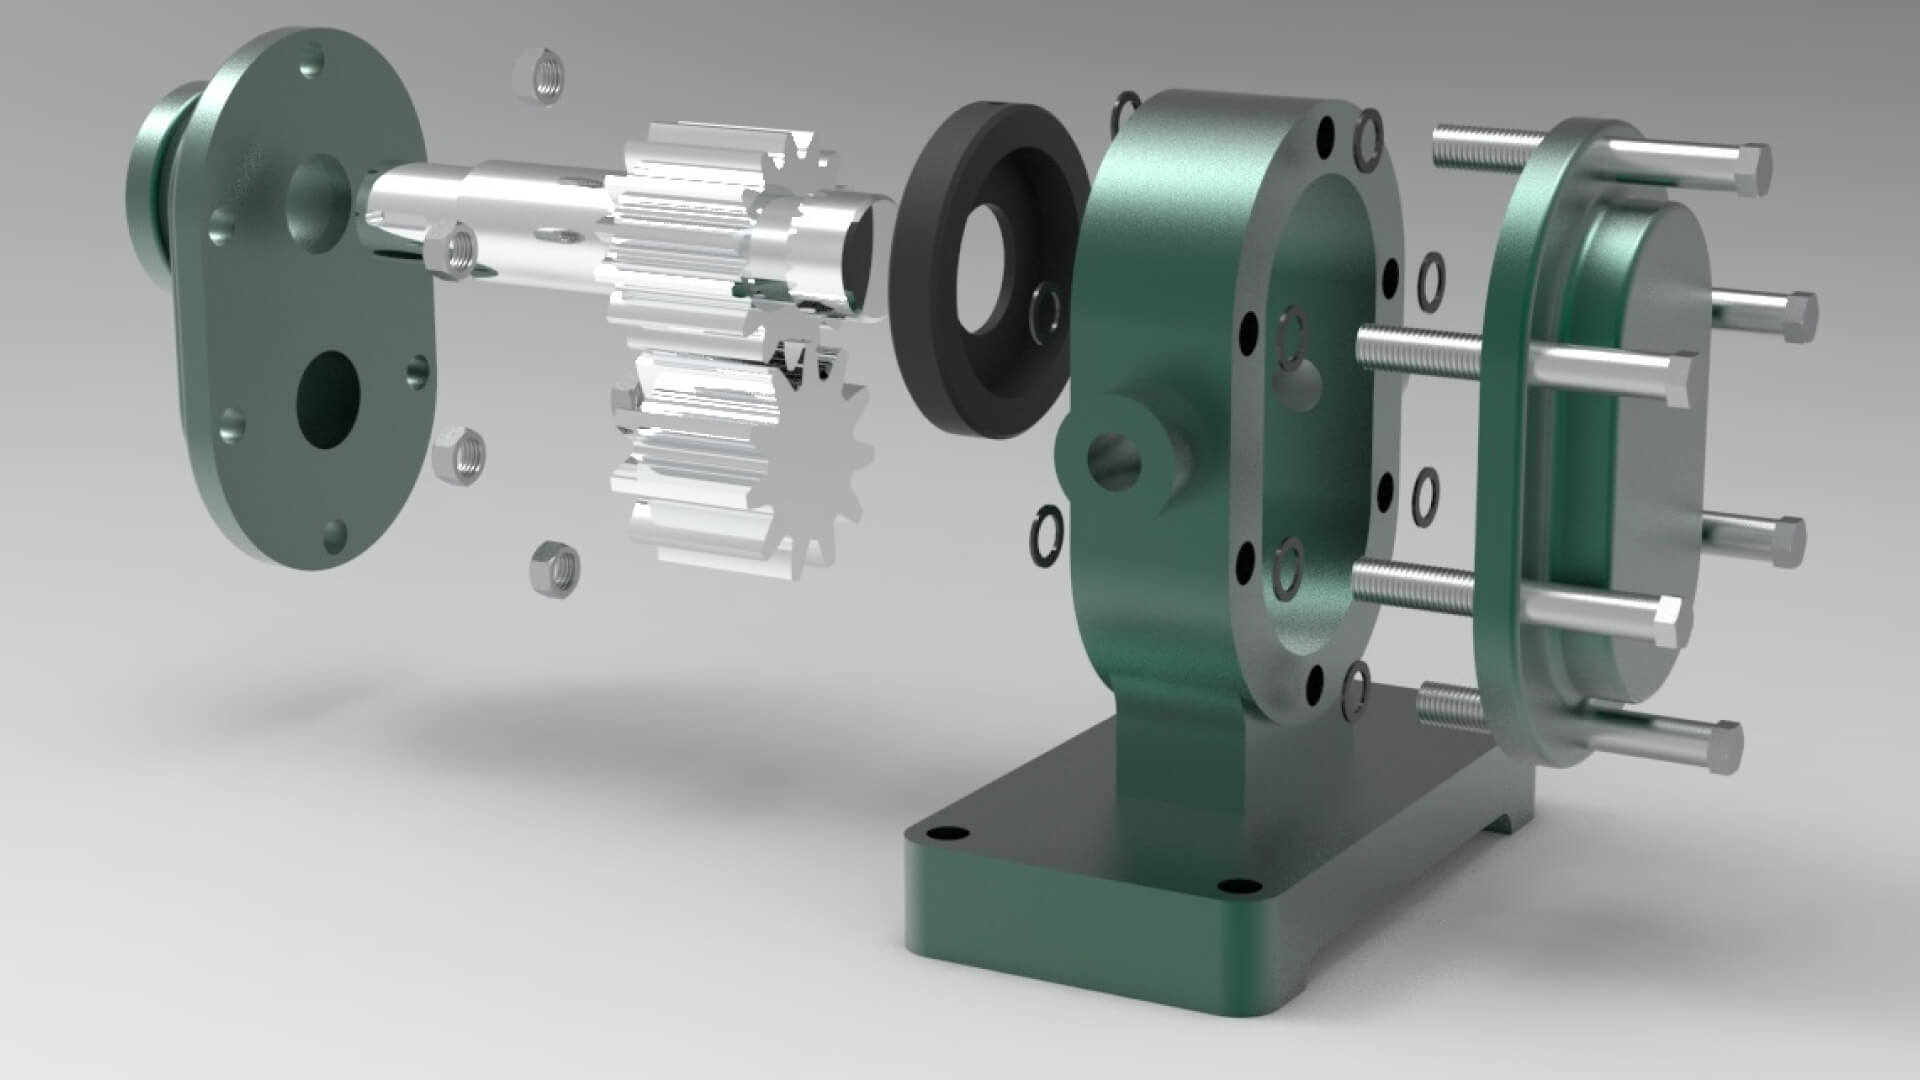 A 3D CAD drawing of a gear pump